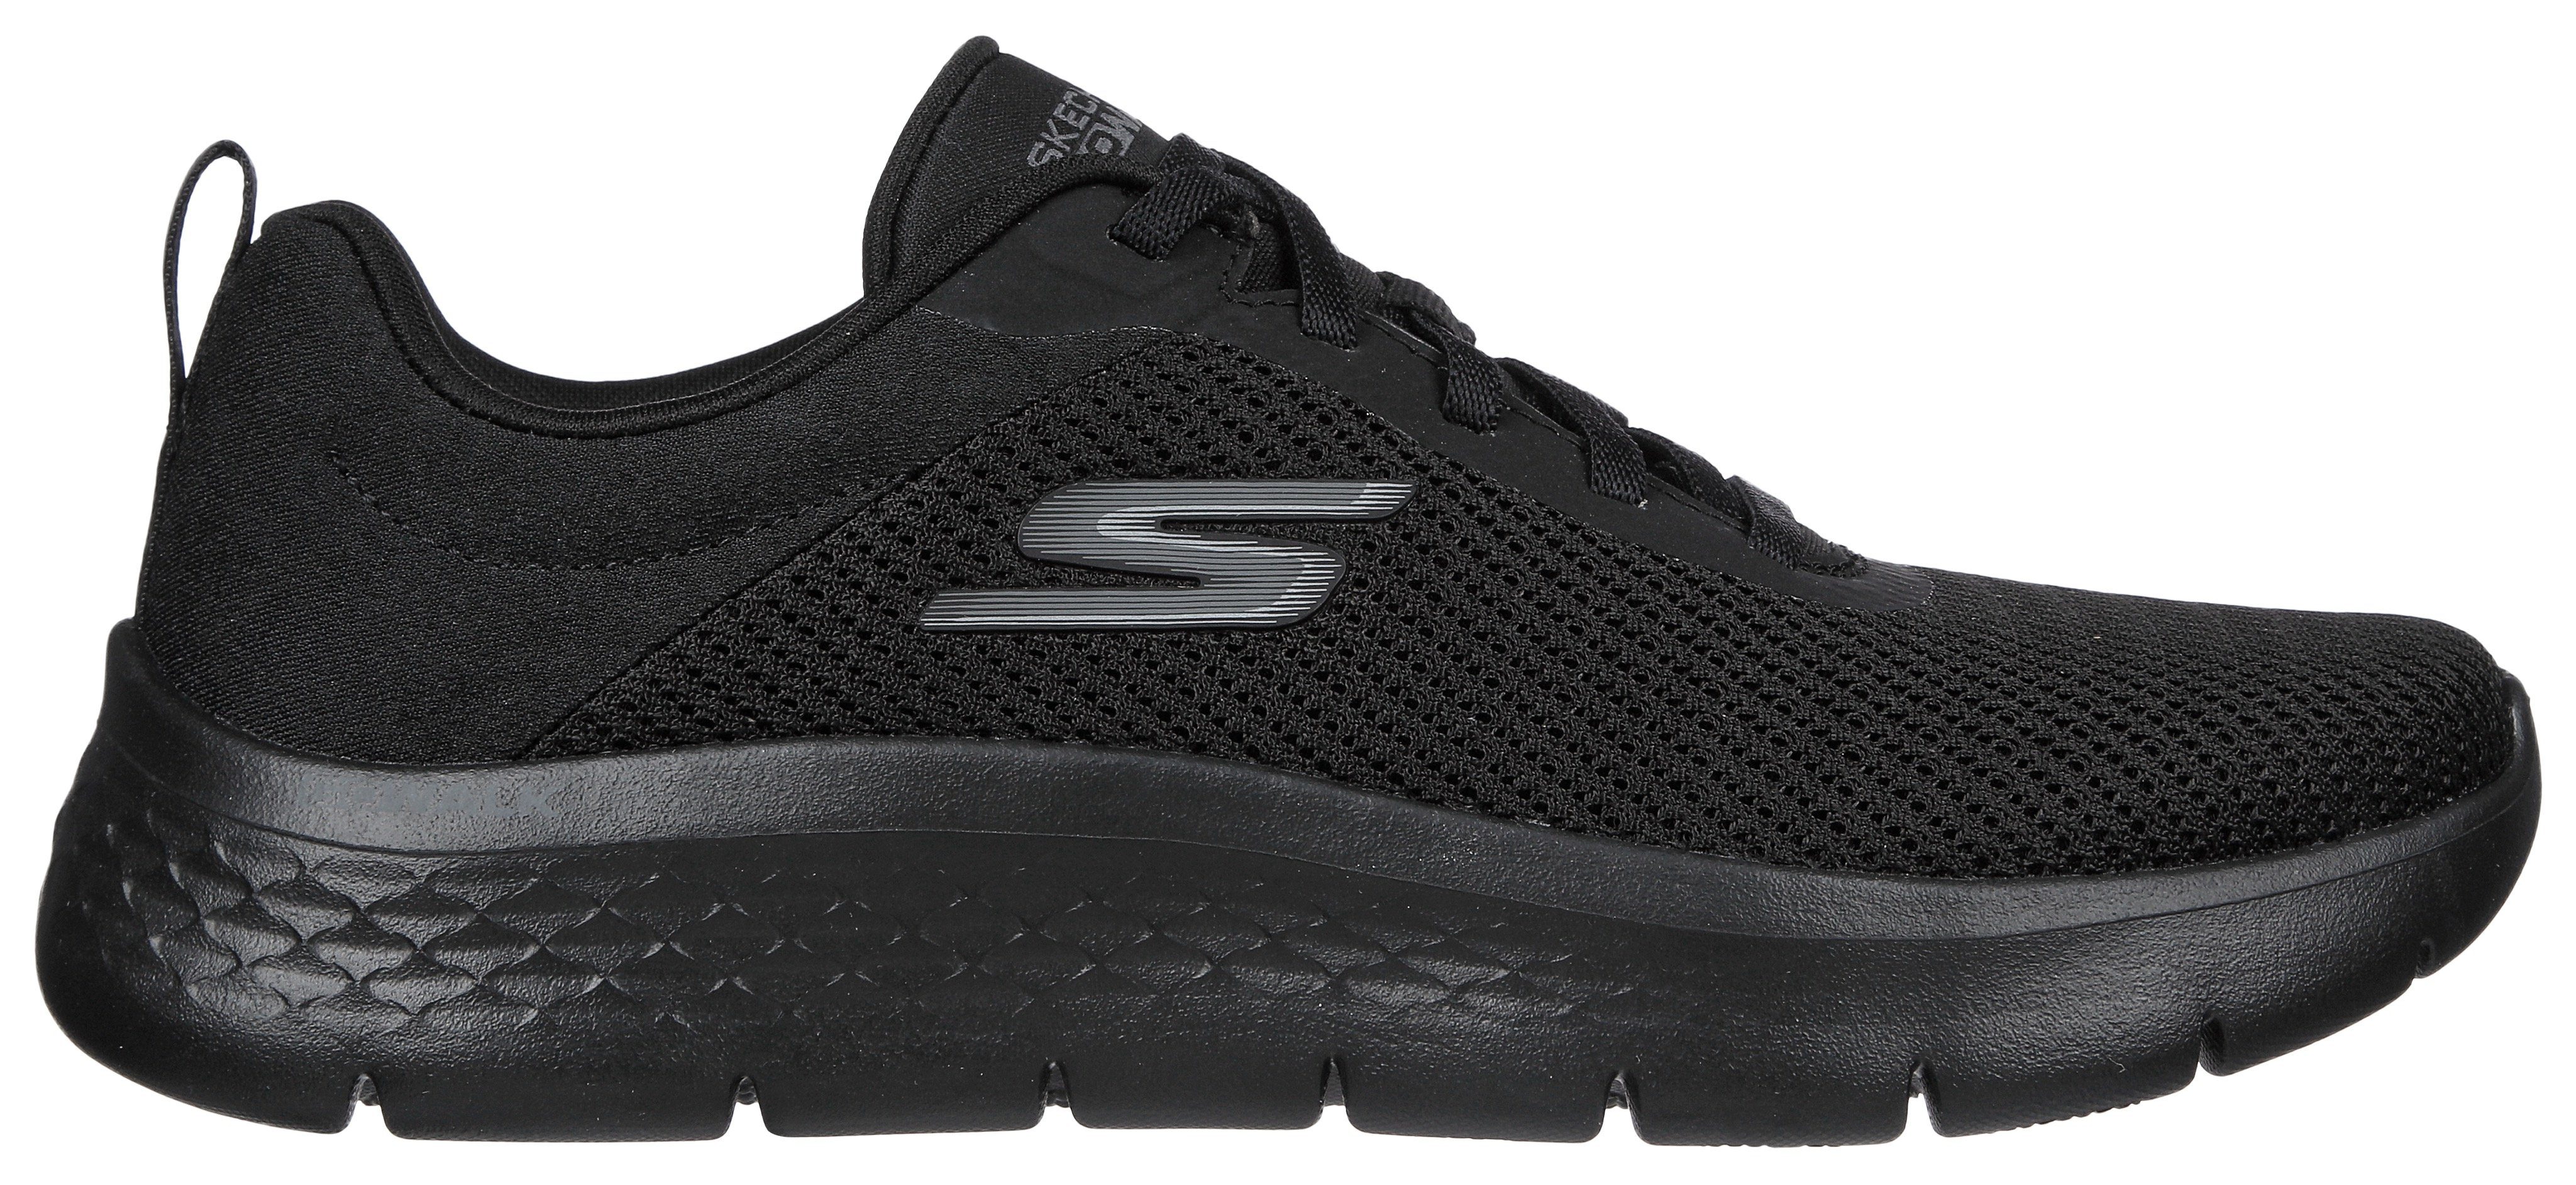 FLEX geeignet Skechers Sneaker WALK für schwarz-uni Slip-On GO ALANI Maschinenwäsche